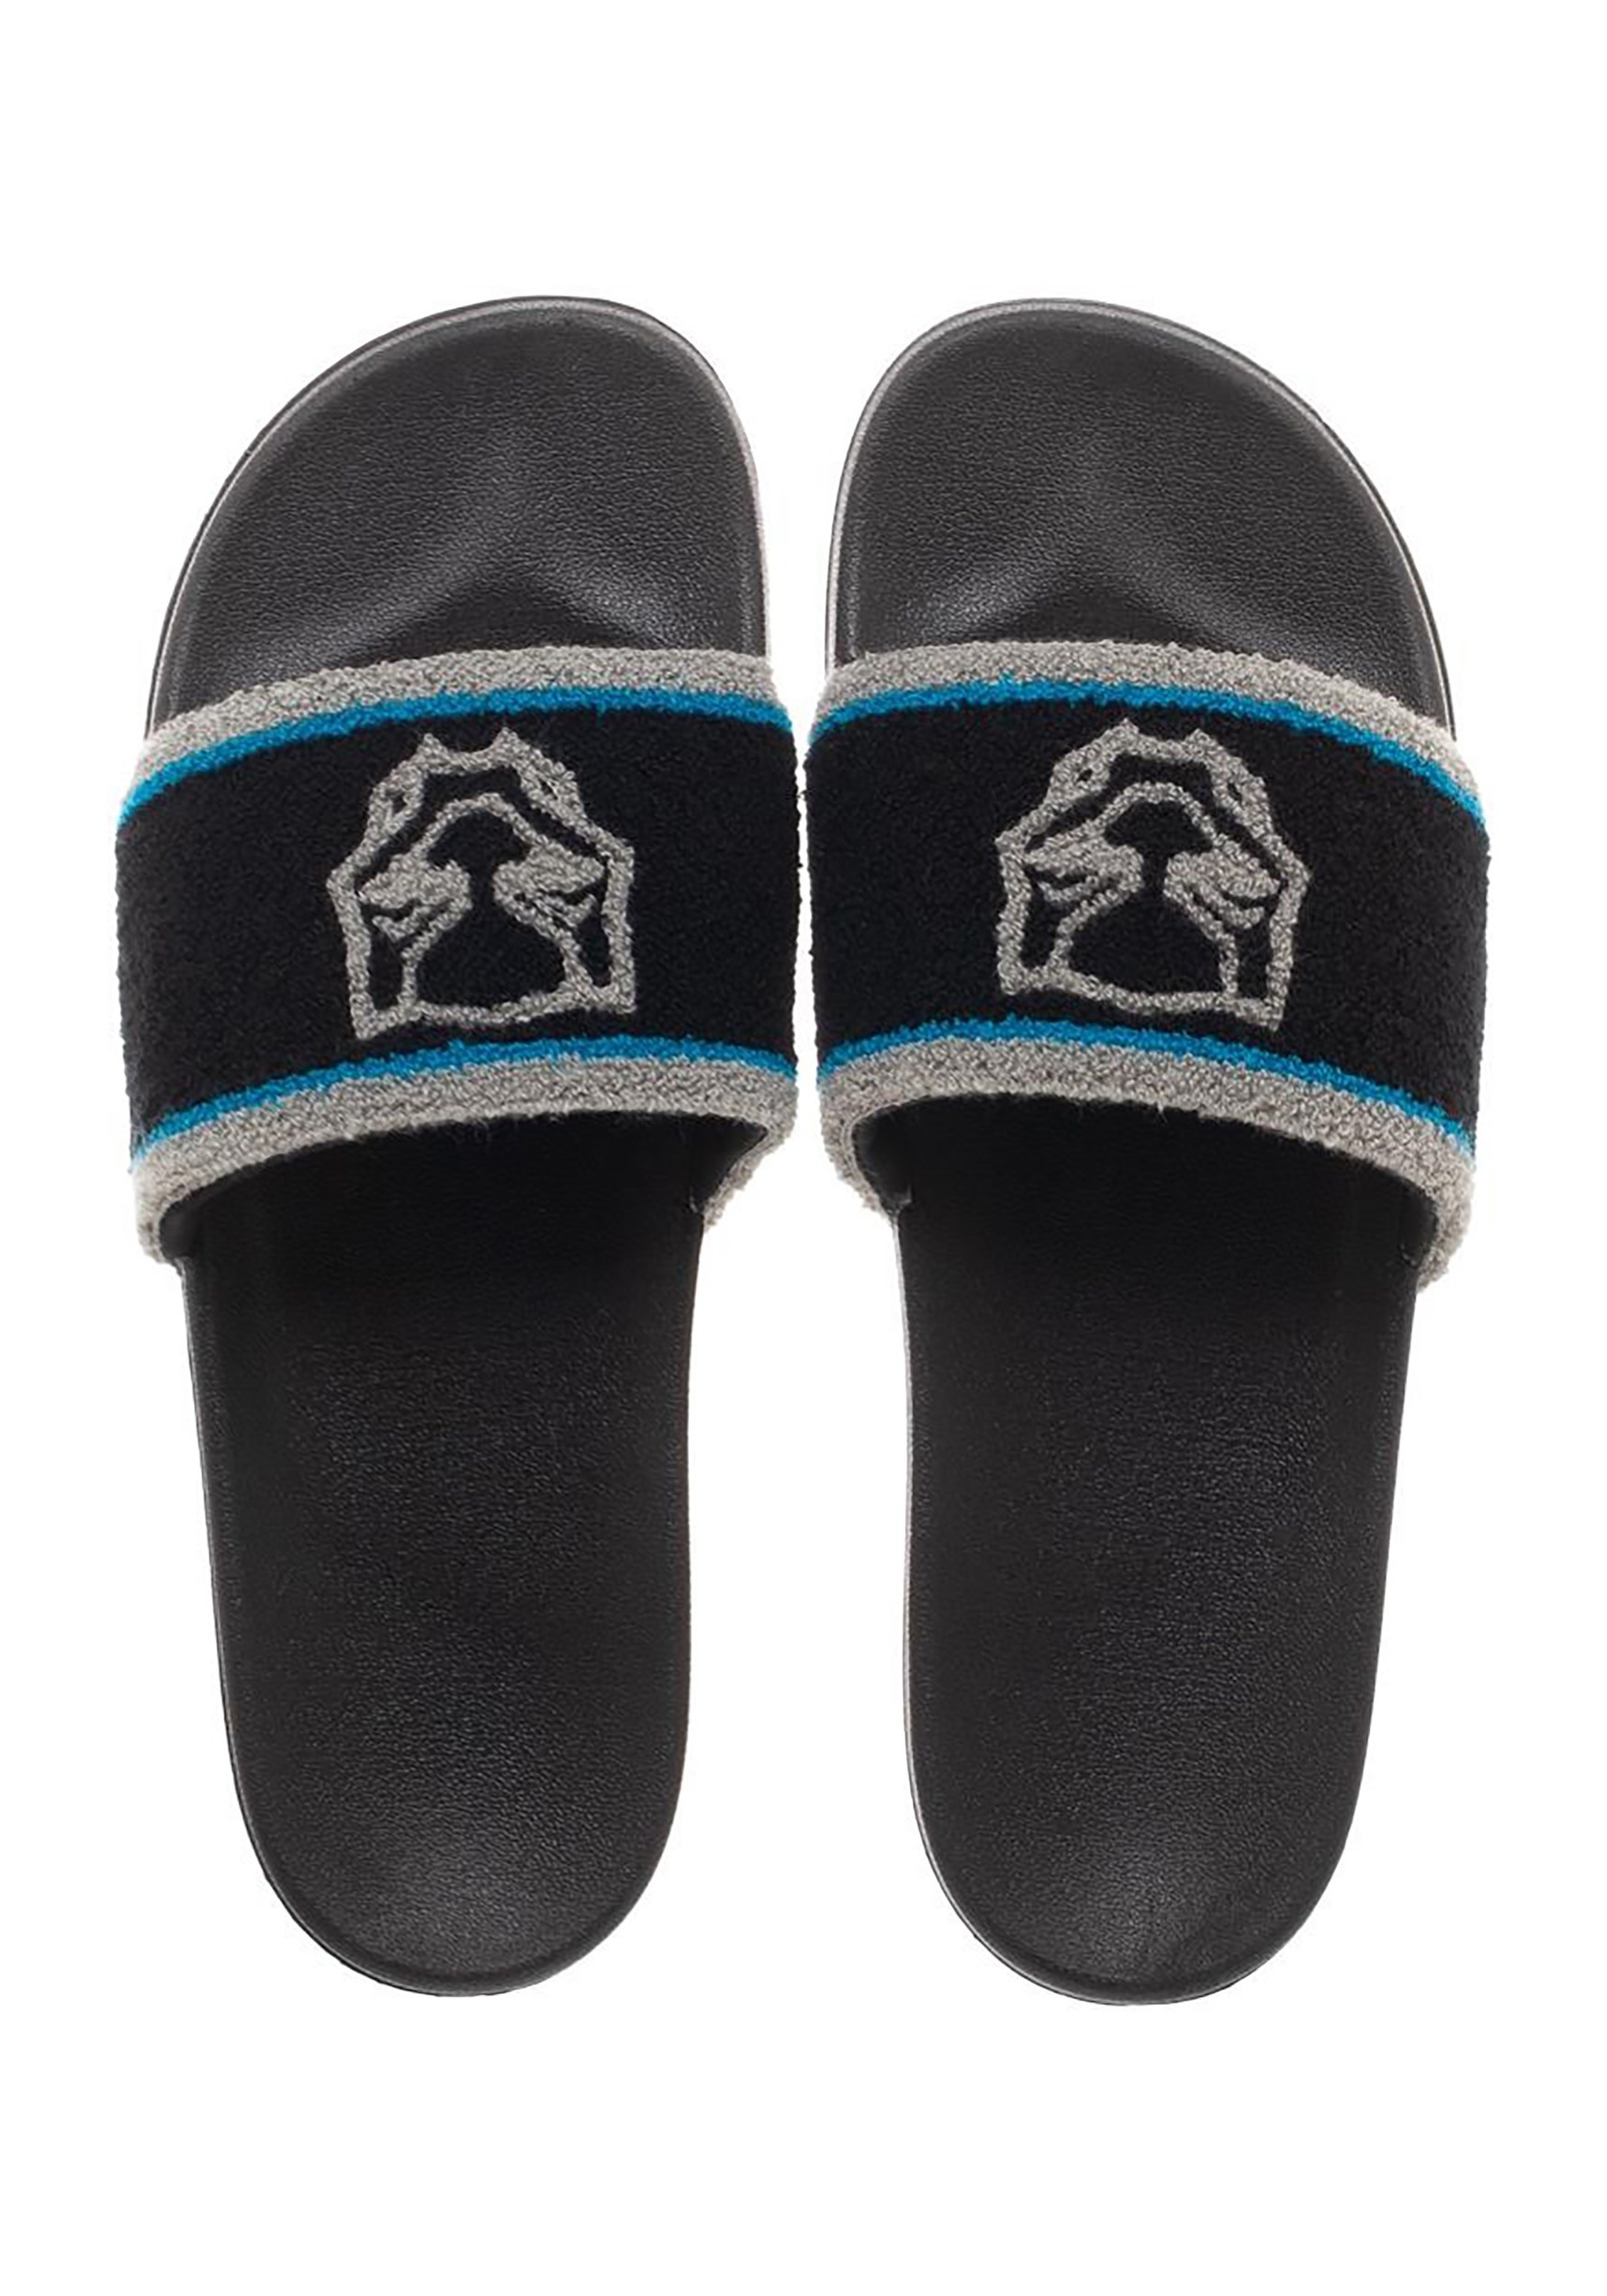 Adult Black Panther Retro Slide Sandals